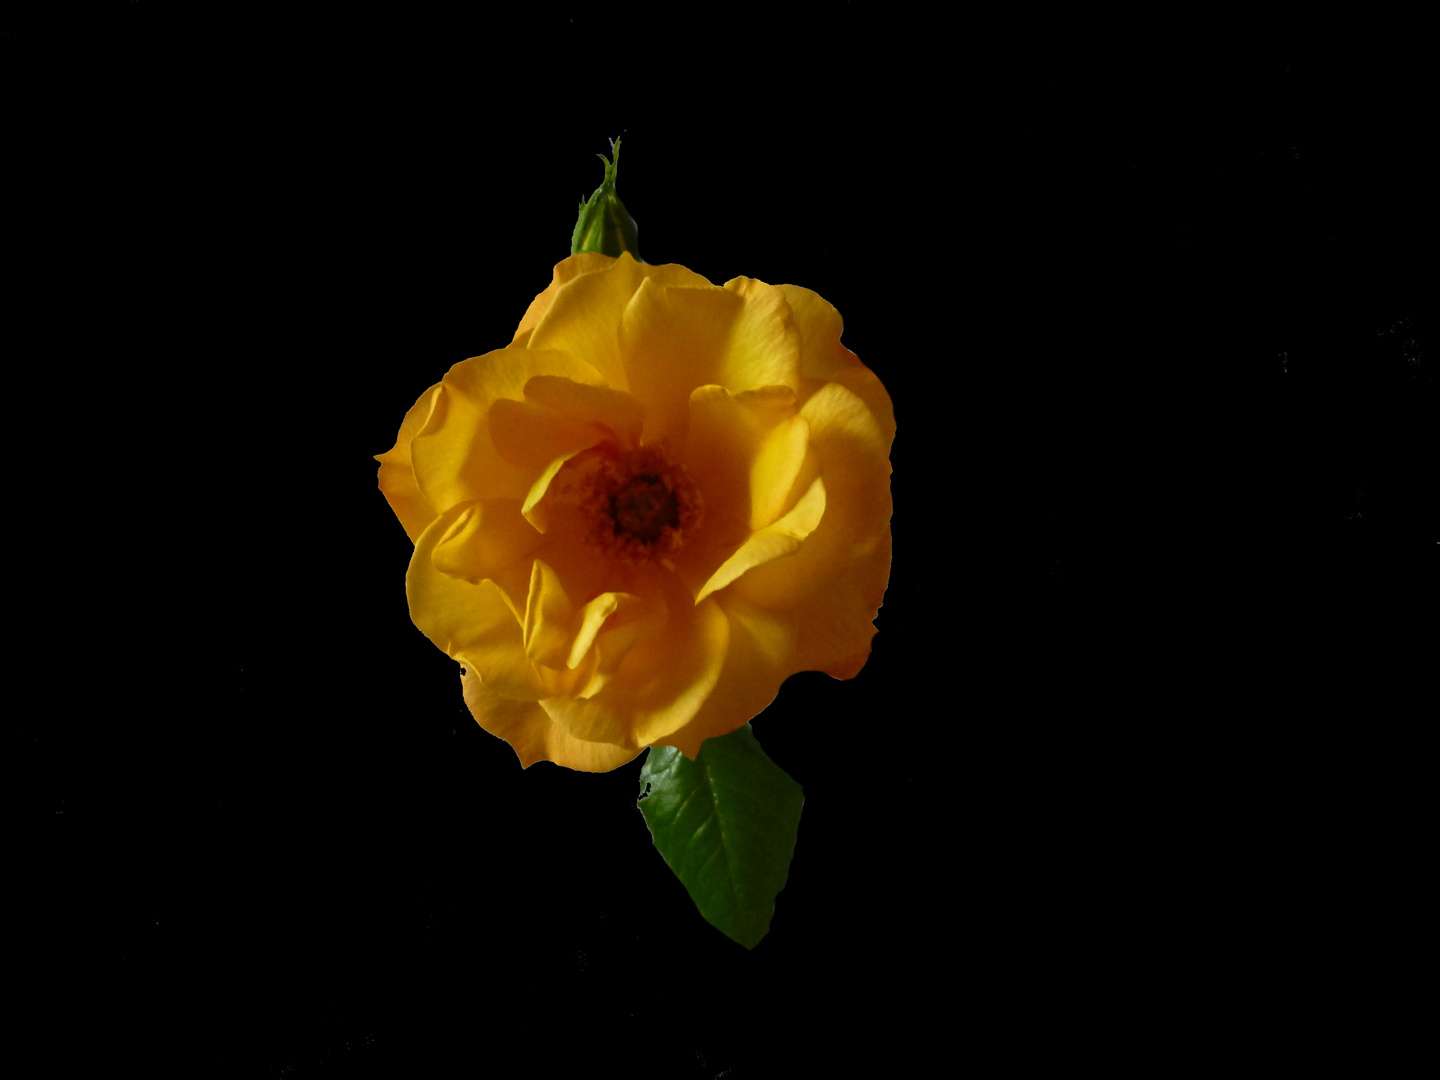 Meine gelbe Rose fürs Wochenende